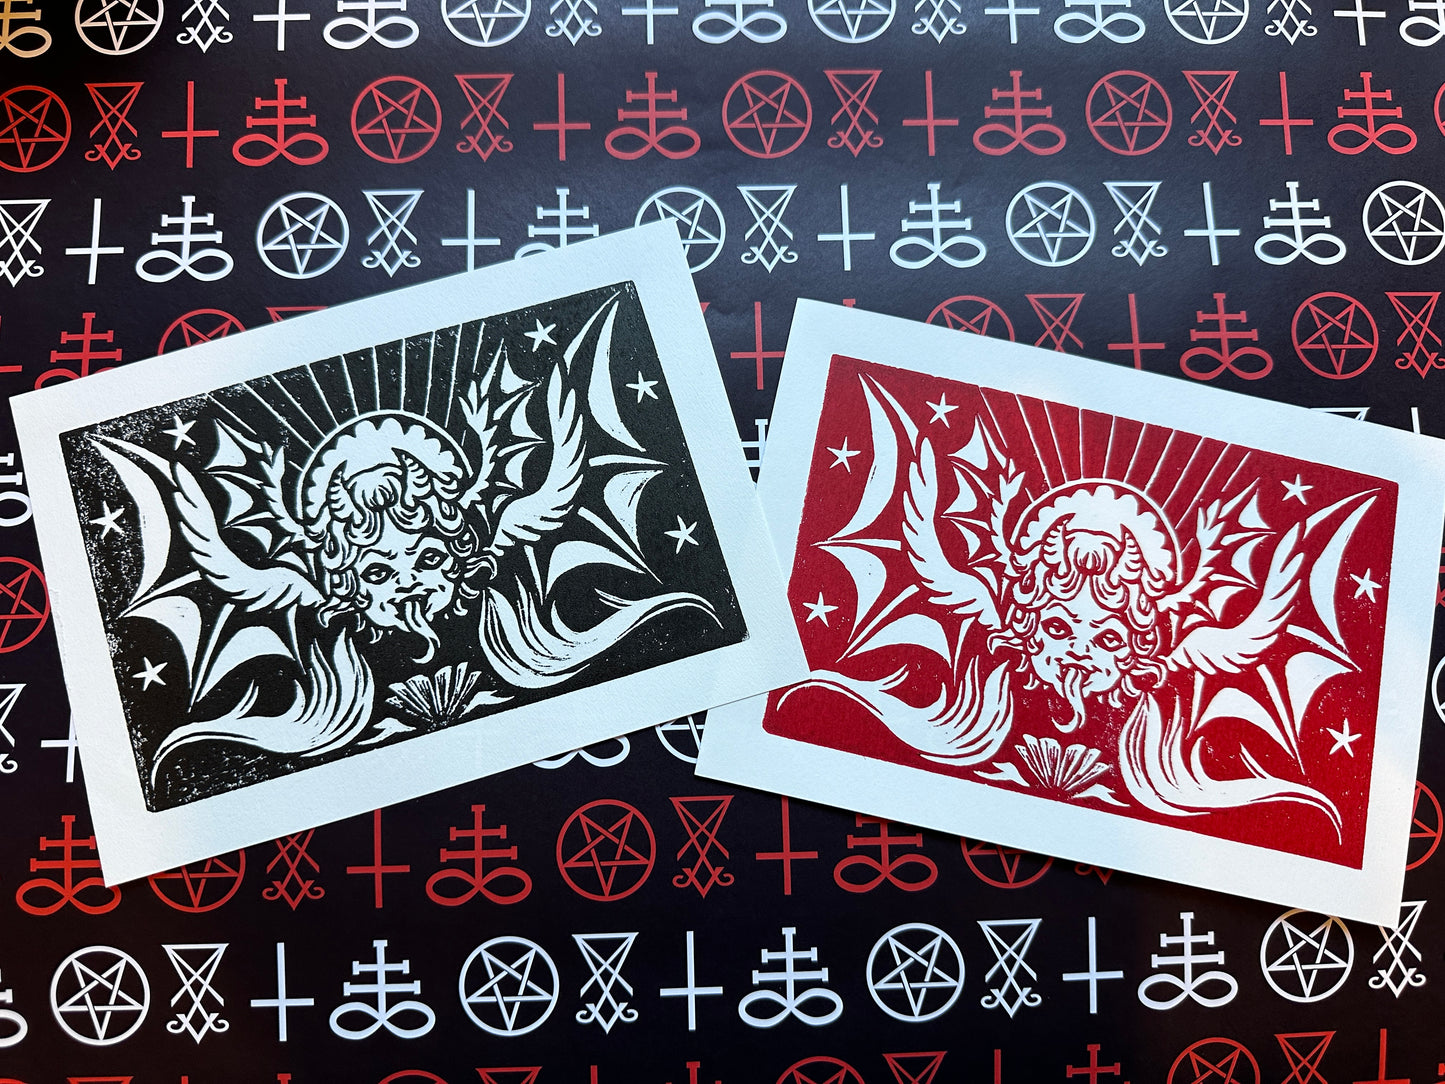 Devil Cherubim 5x7 oil-based prints